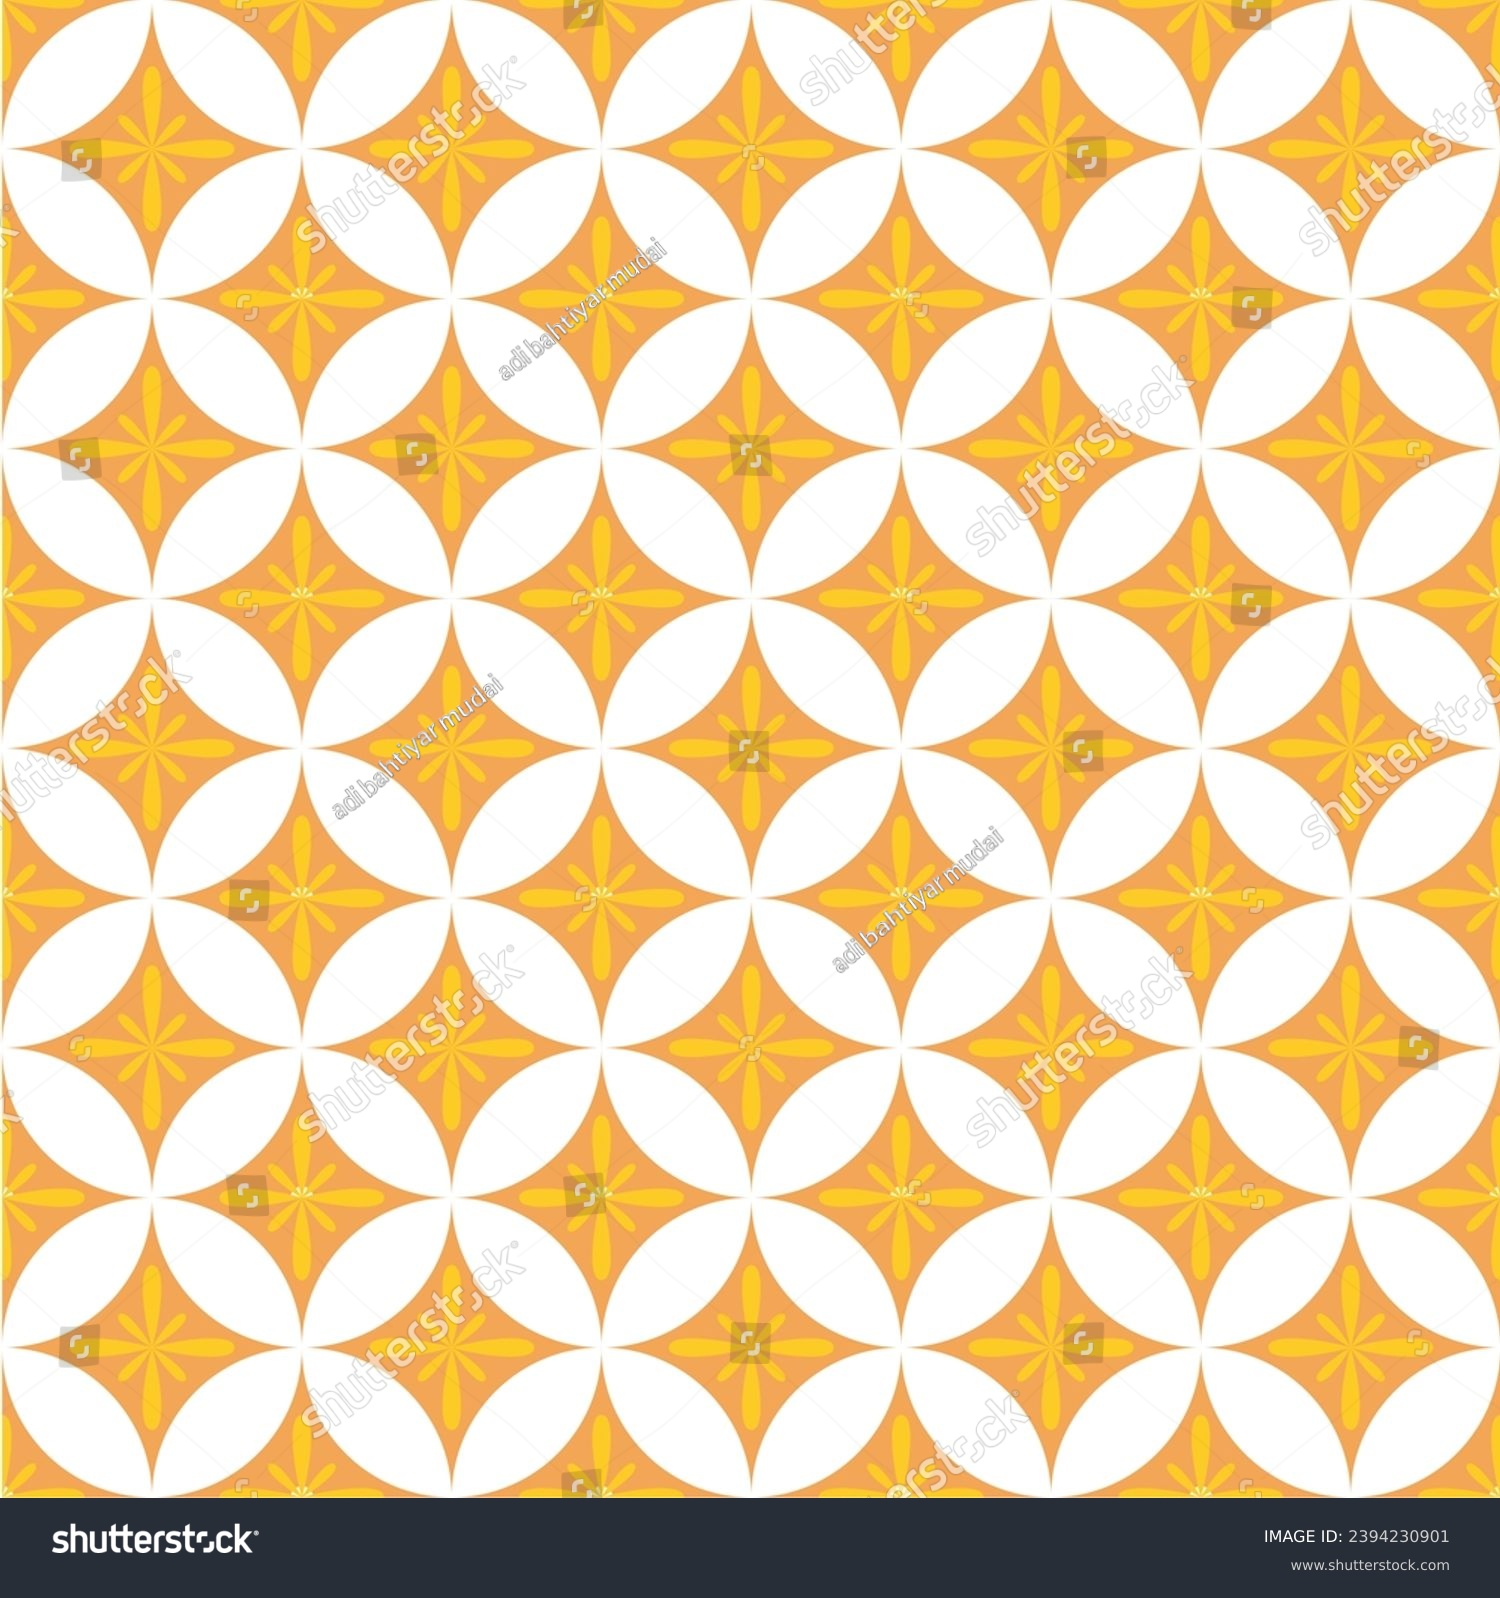 SVG of bati kawung jawa. background batik jawa. motif batik kawung jawa svg